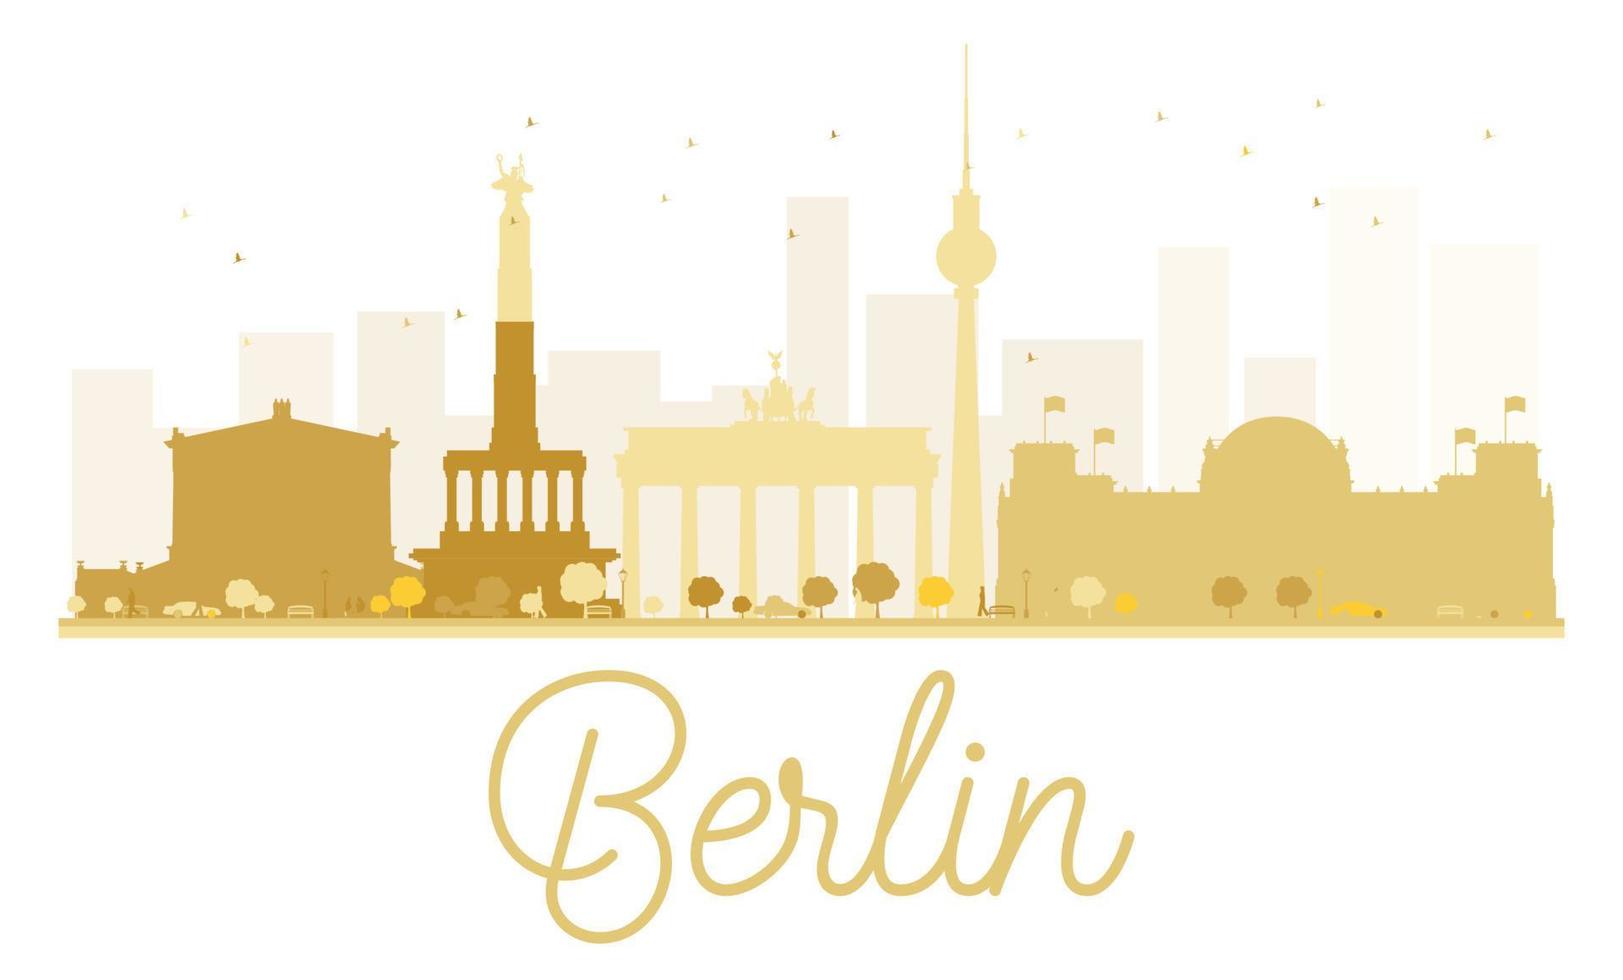 silueta dorada del horizonte de la ciudad de berlín. vector